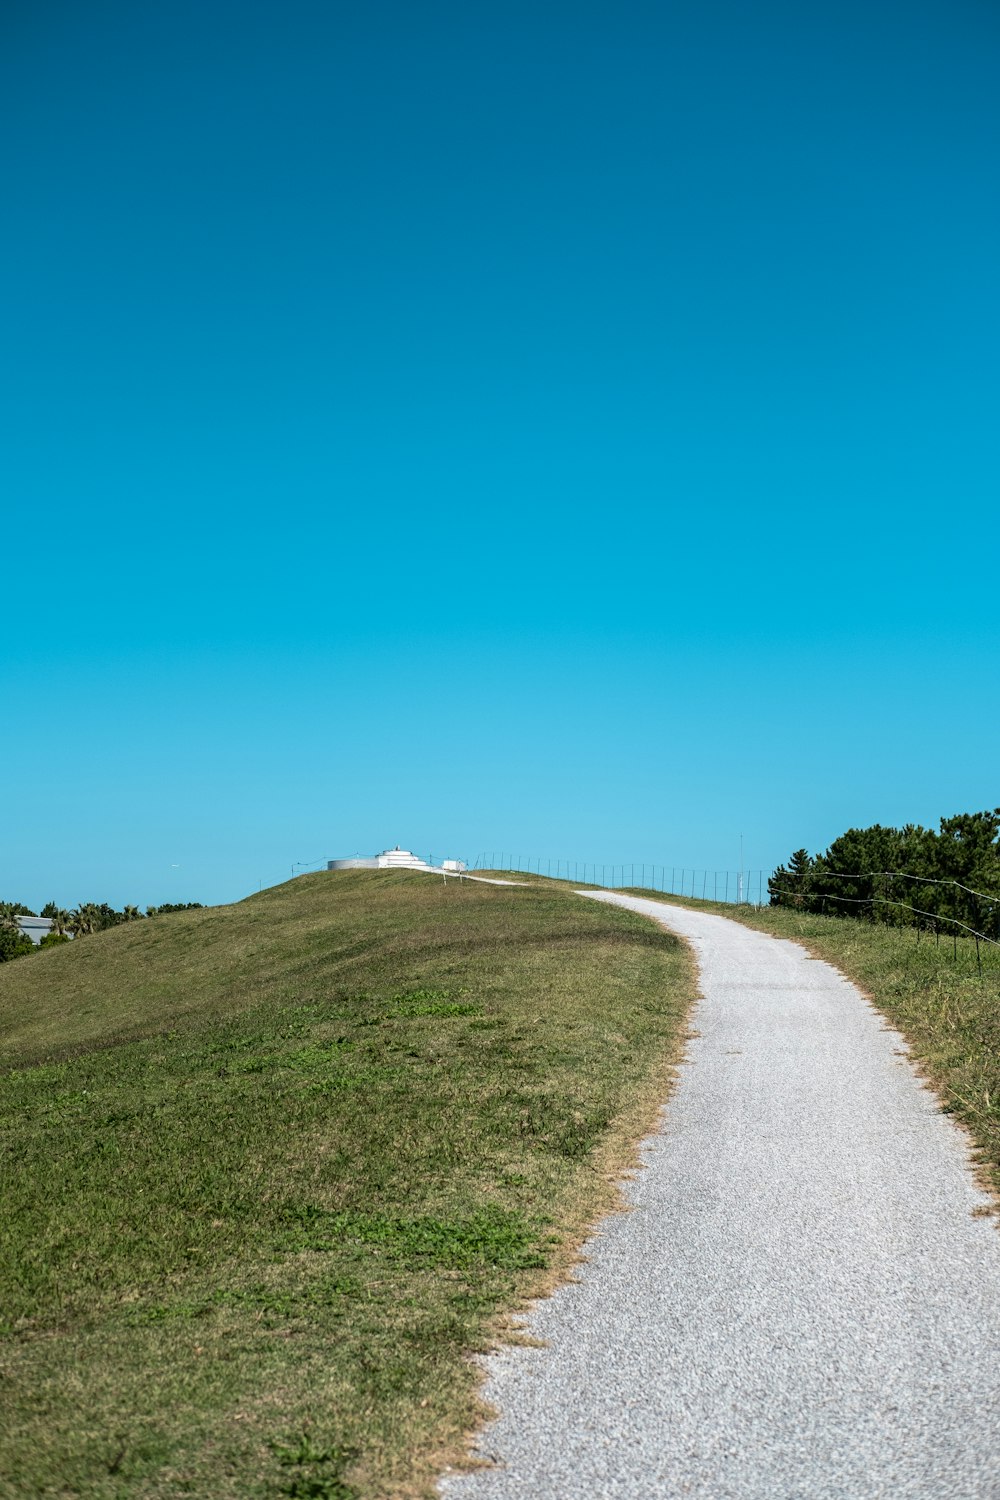 camino gris entre campo de hierba verde bajo cielo azul durante el día